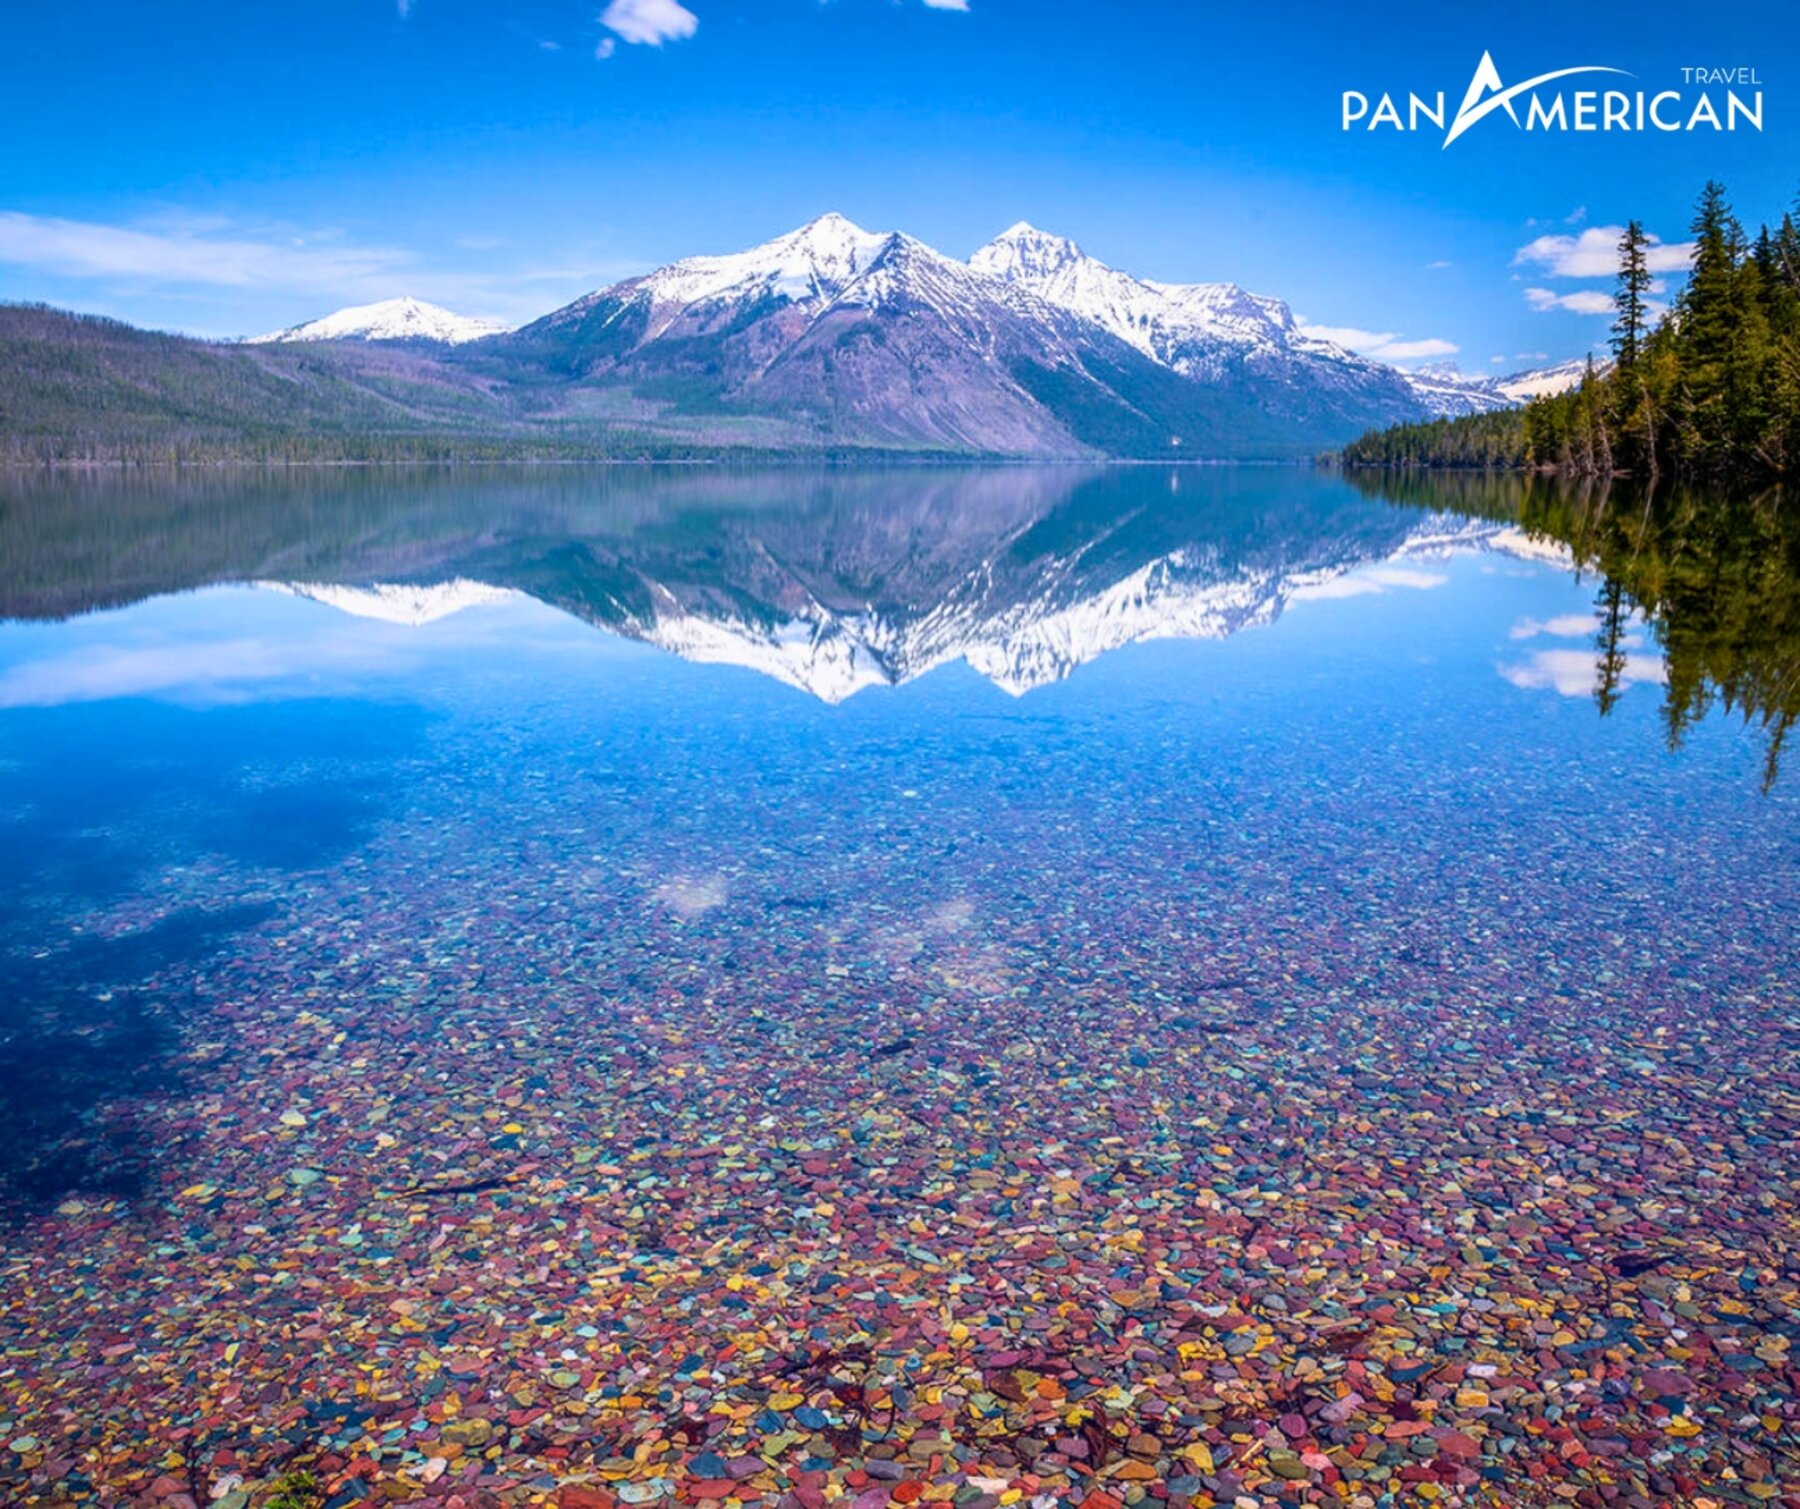 Chiêm ngưỡng cảnh quan kỳ vĩ của top 10 công viên quốc gia đẹp nhất nước Mỹ - Gallery Image